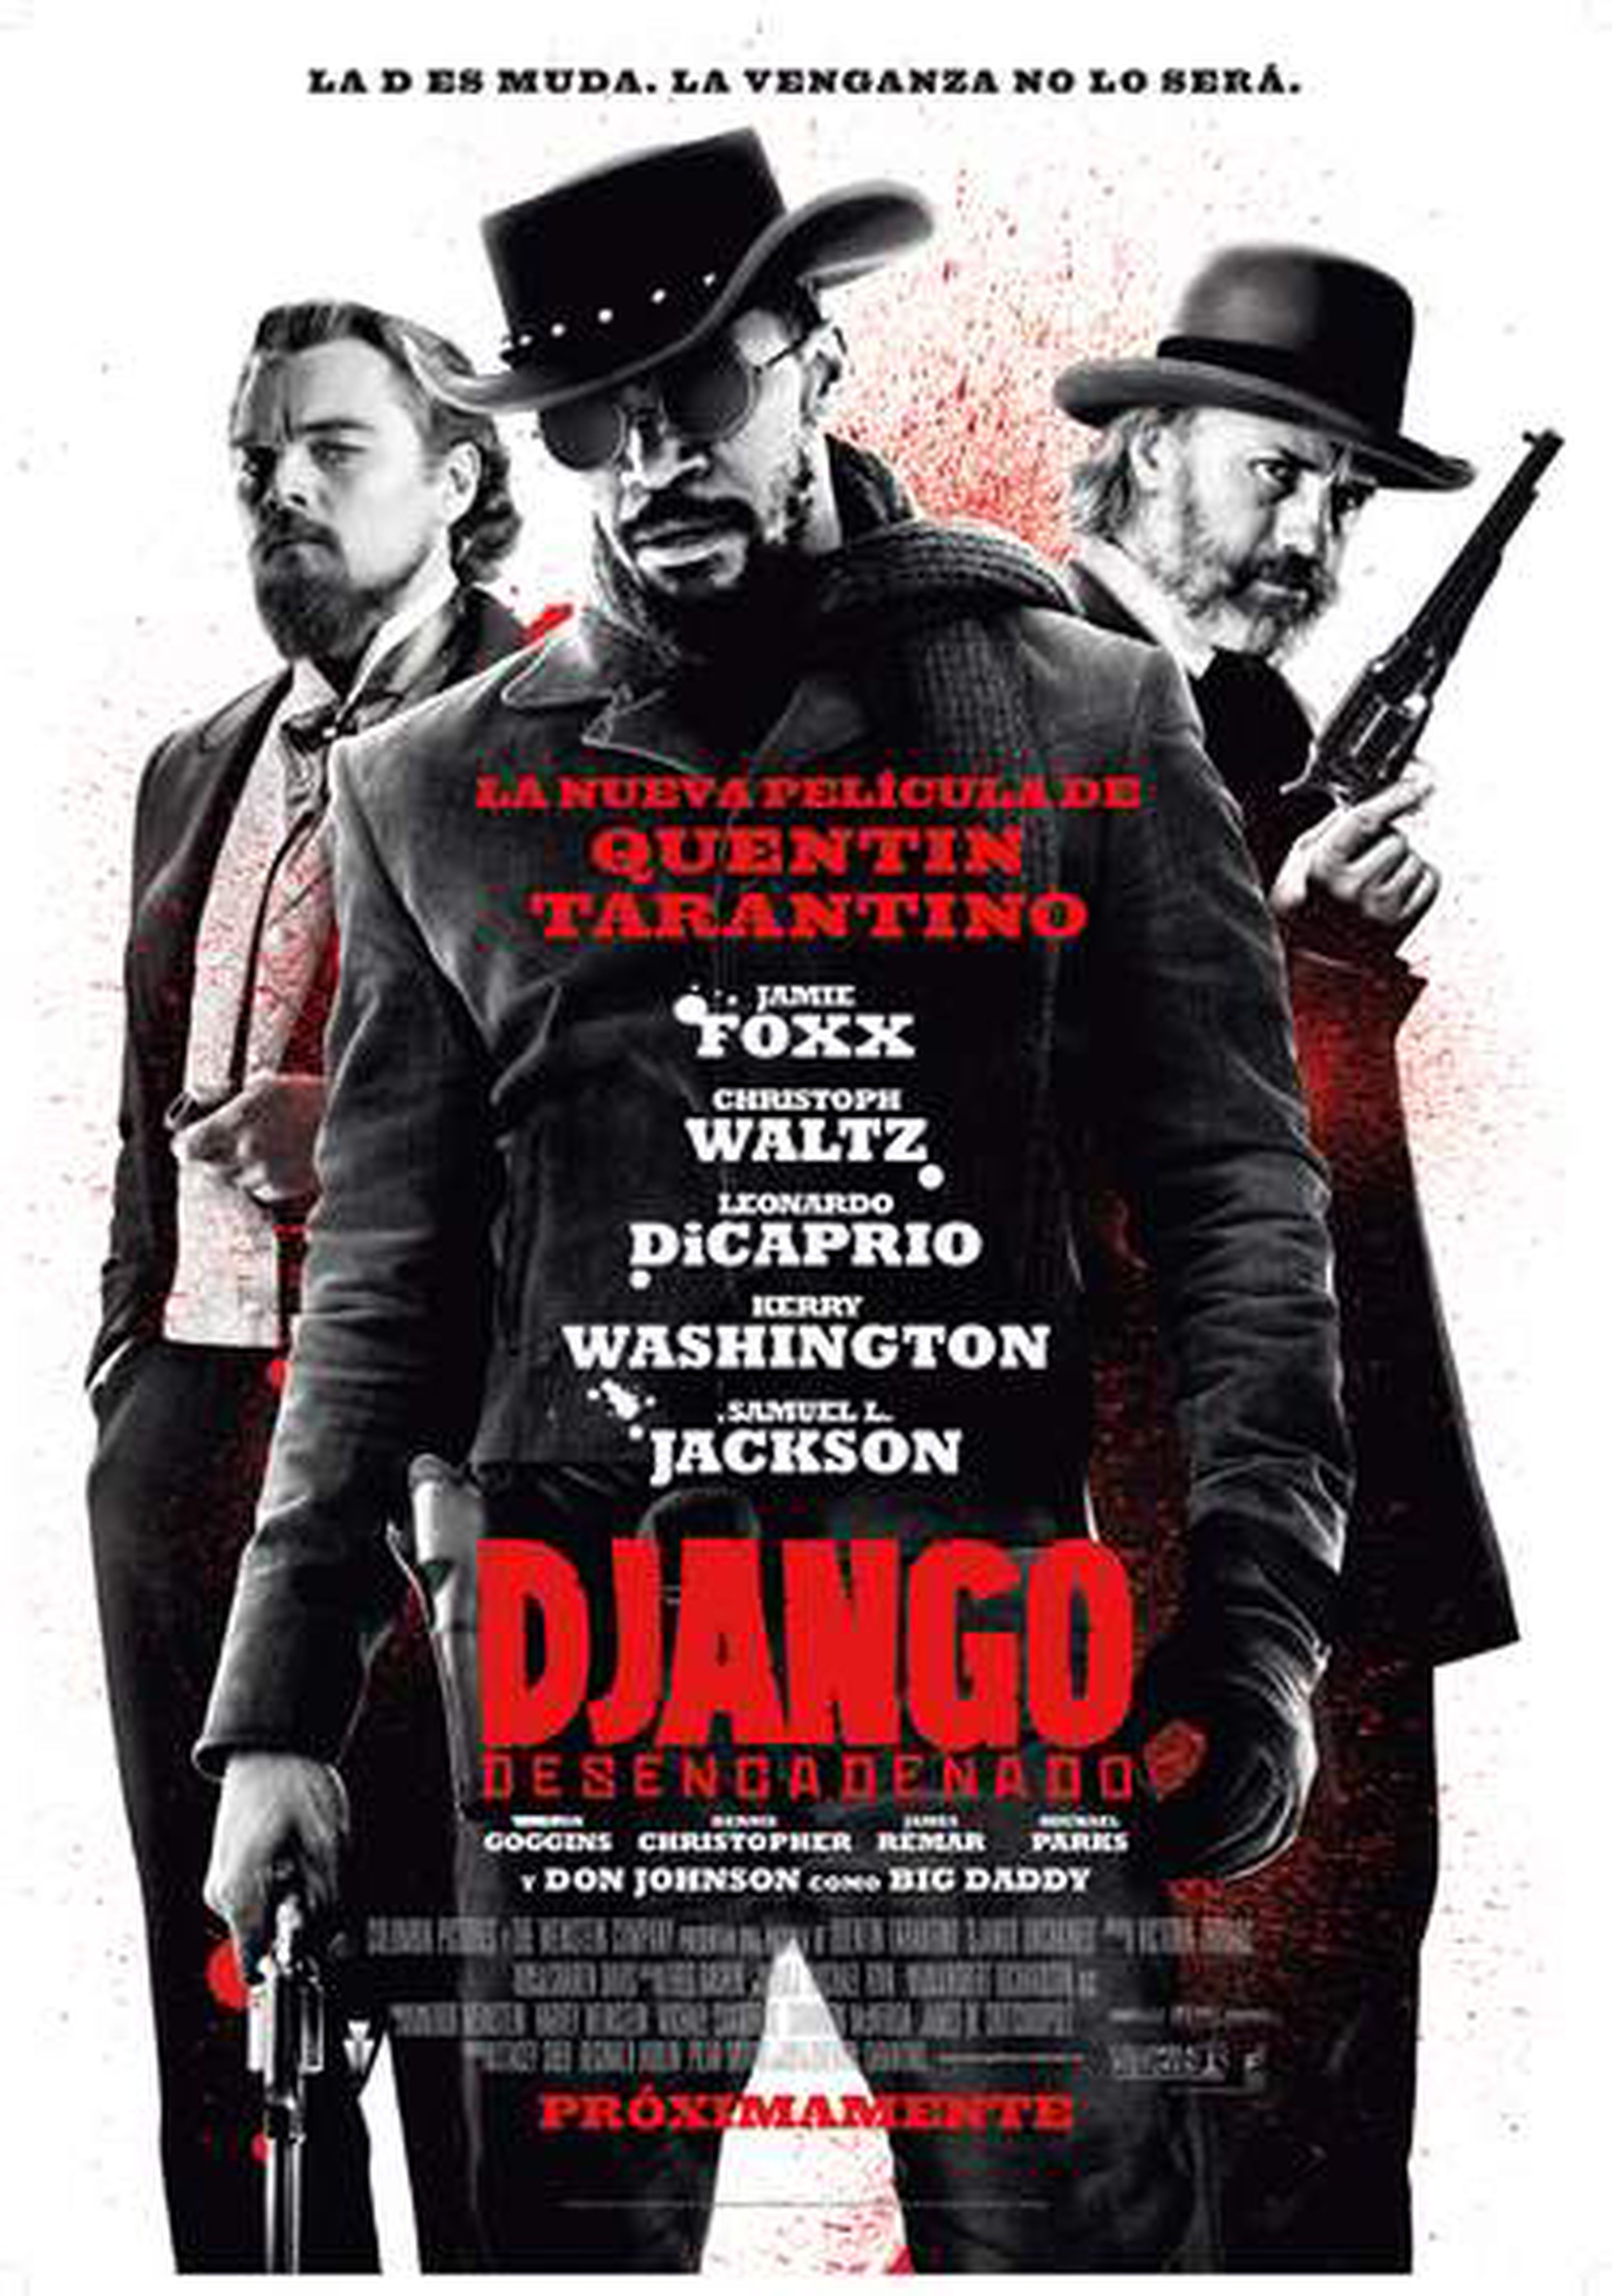 Nuevas imágenes de Django desencadenado